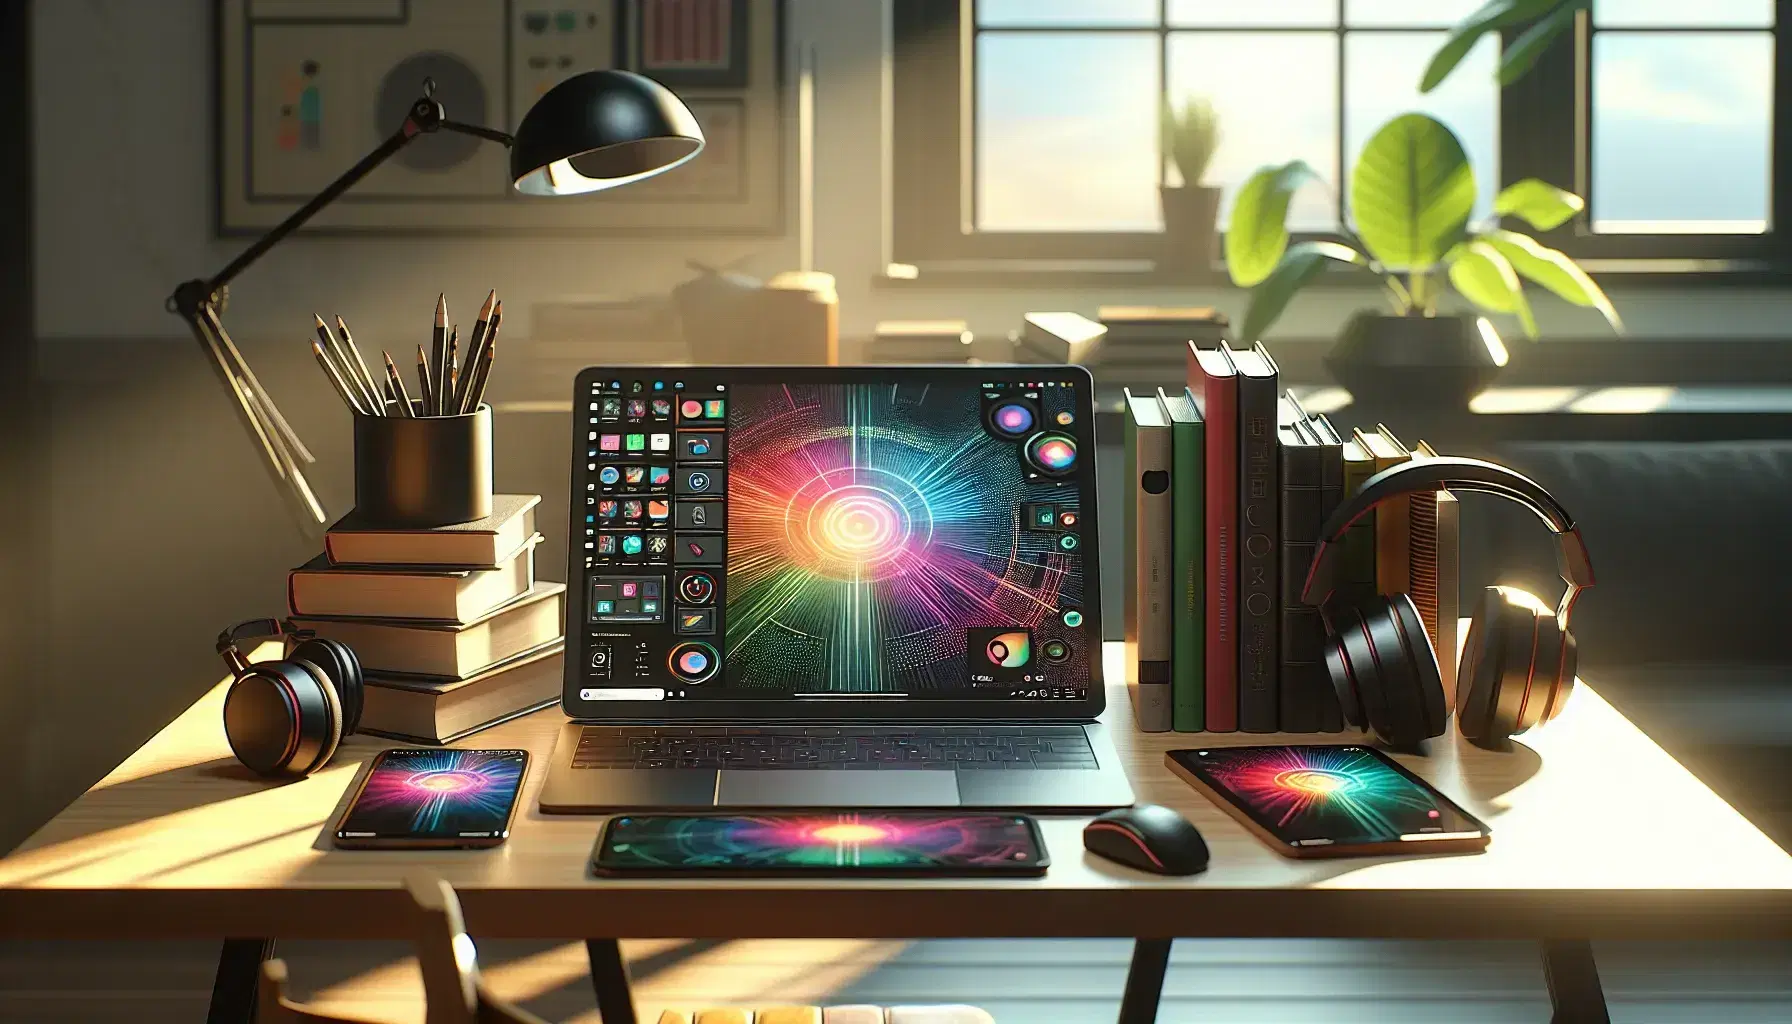 Espacio de trabajo moderno con laptop abierto, tablet con lápiz óptico, smartphone, libros y planta, iluminado naturalmente.